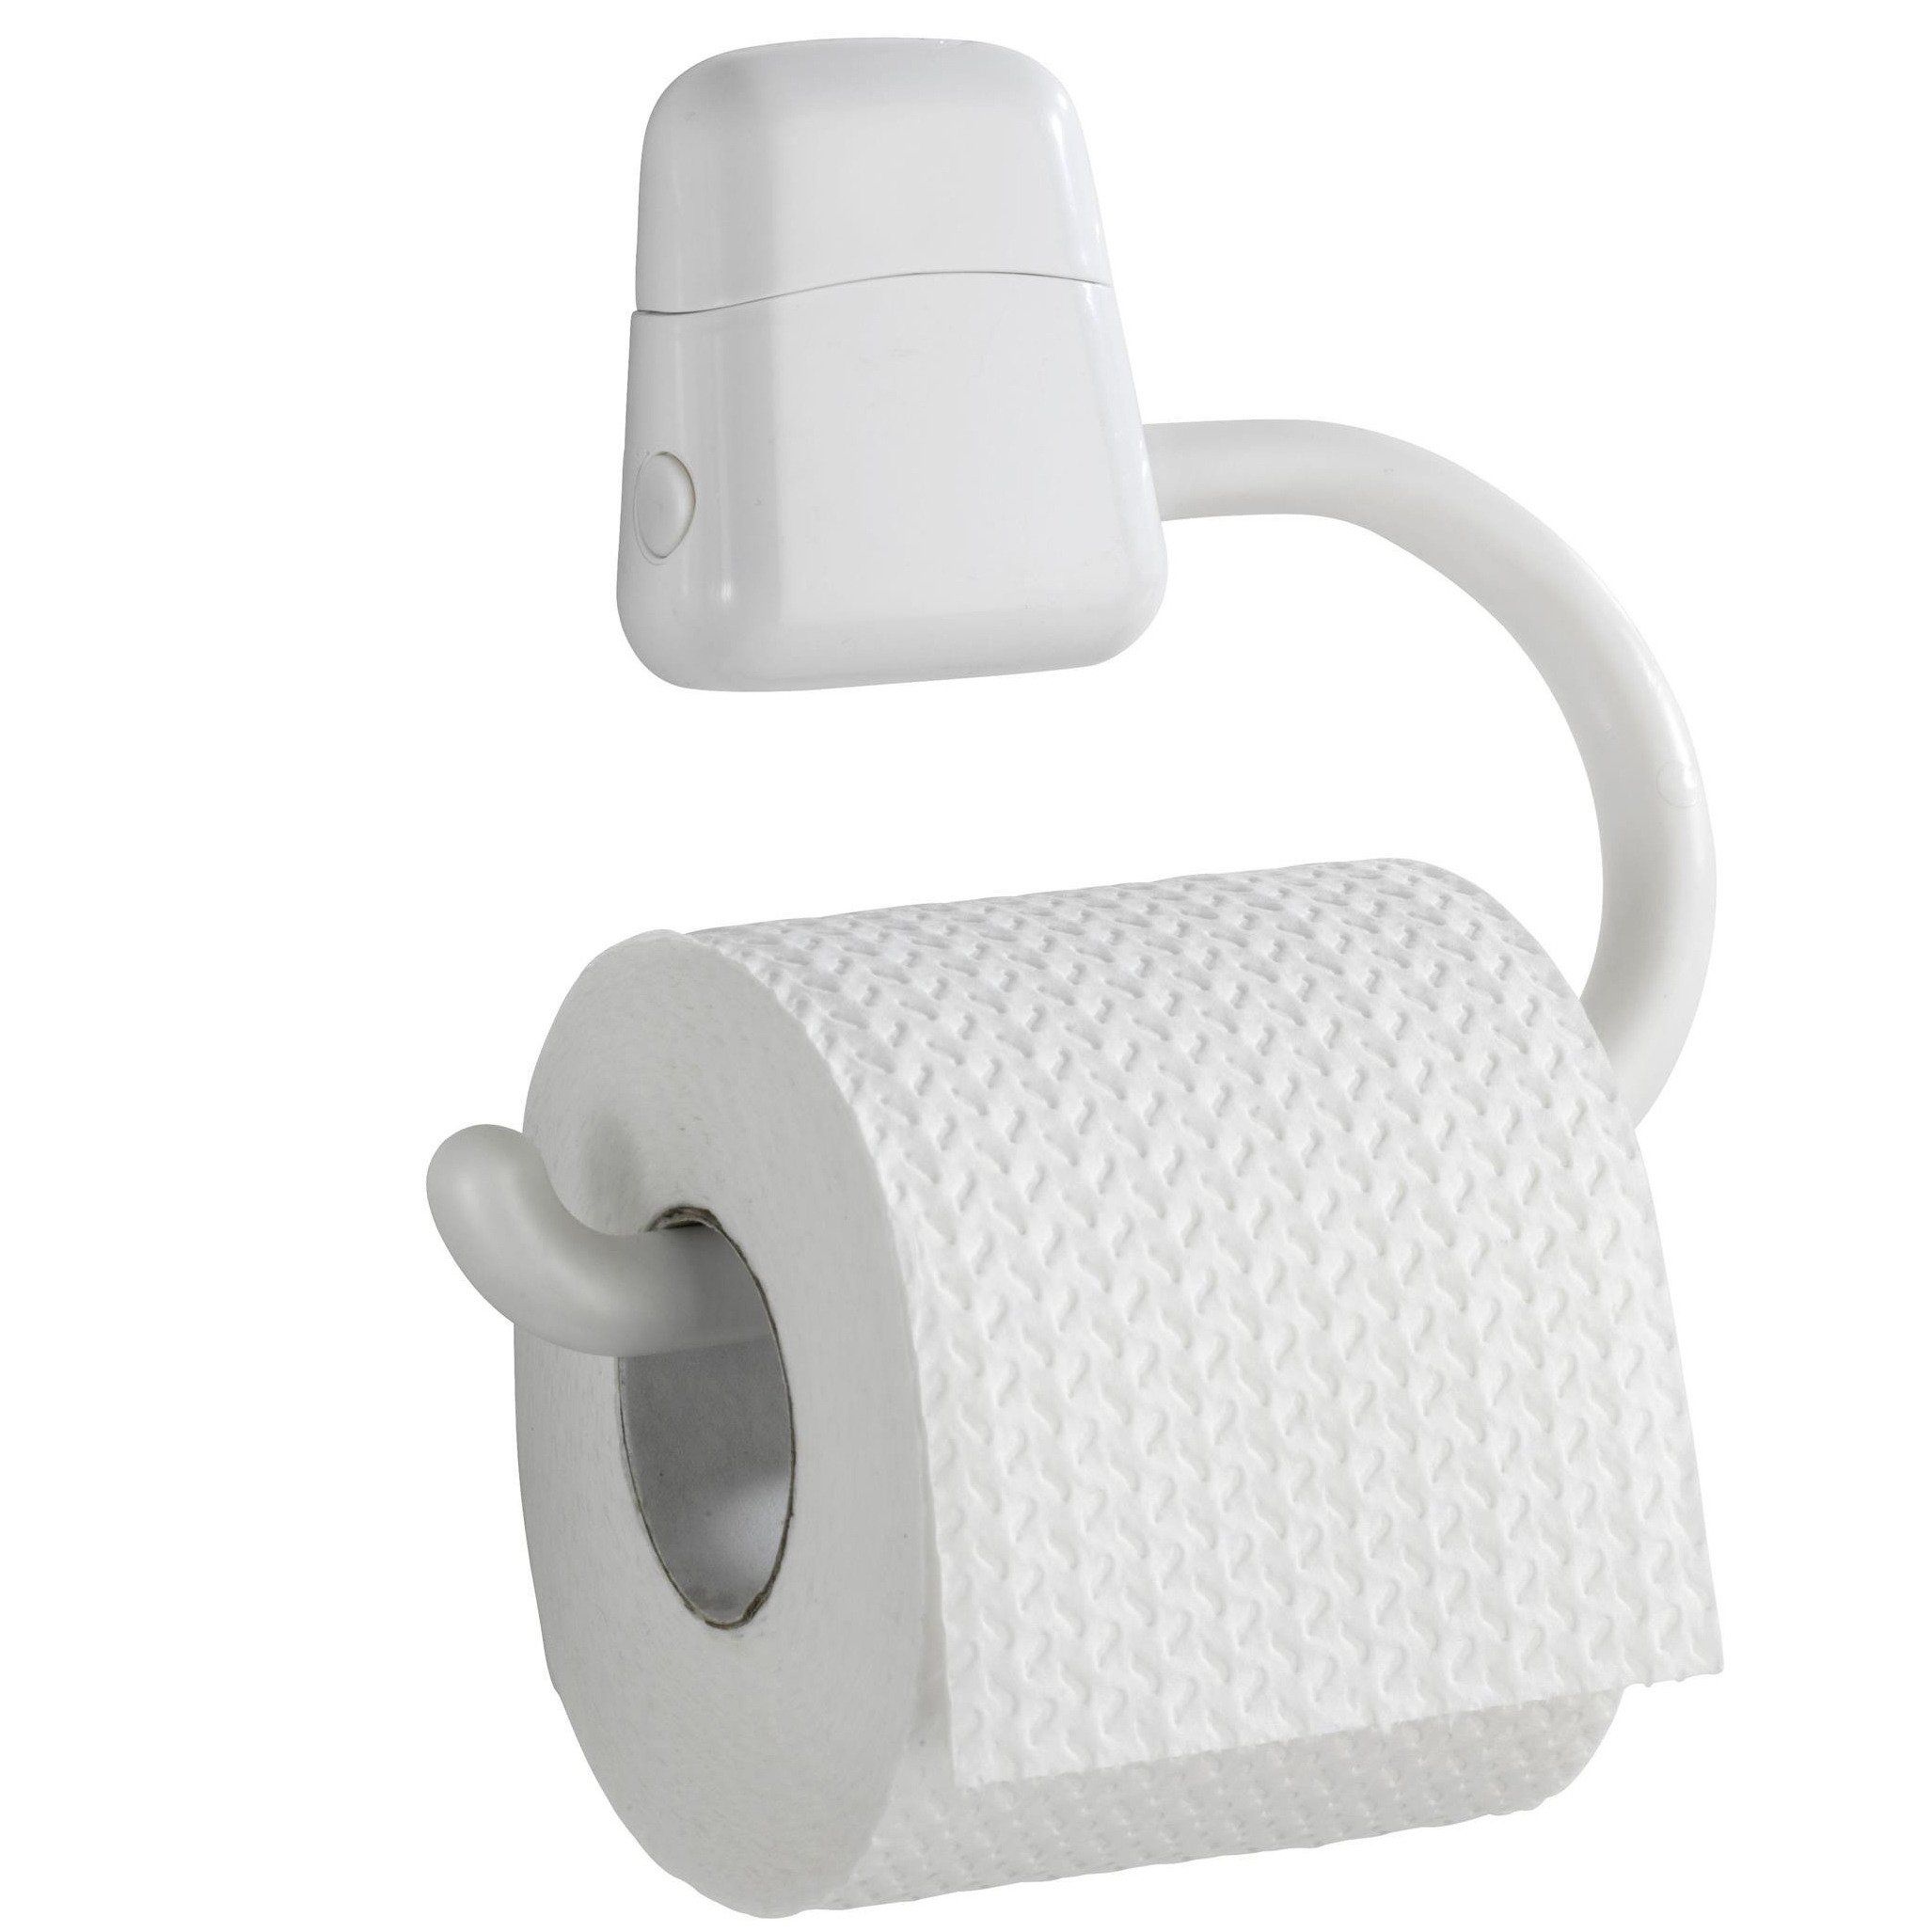 Stojan toaletního papíru PURE, bílá, WENKO - EMAKO.CZ s.r.o.